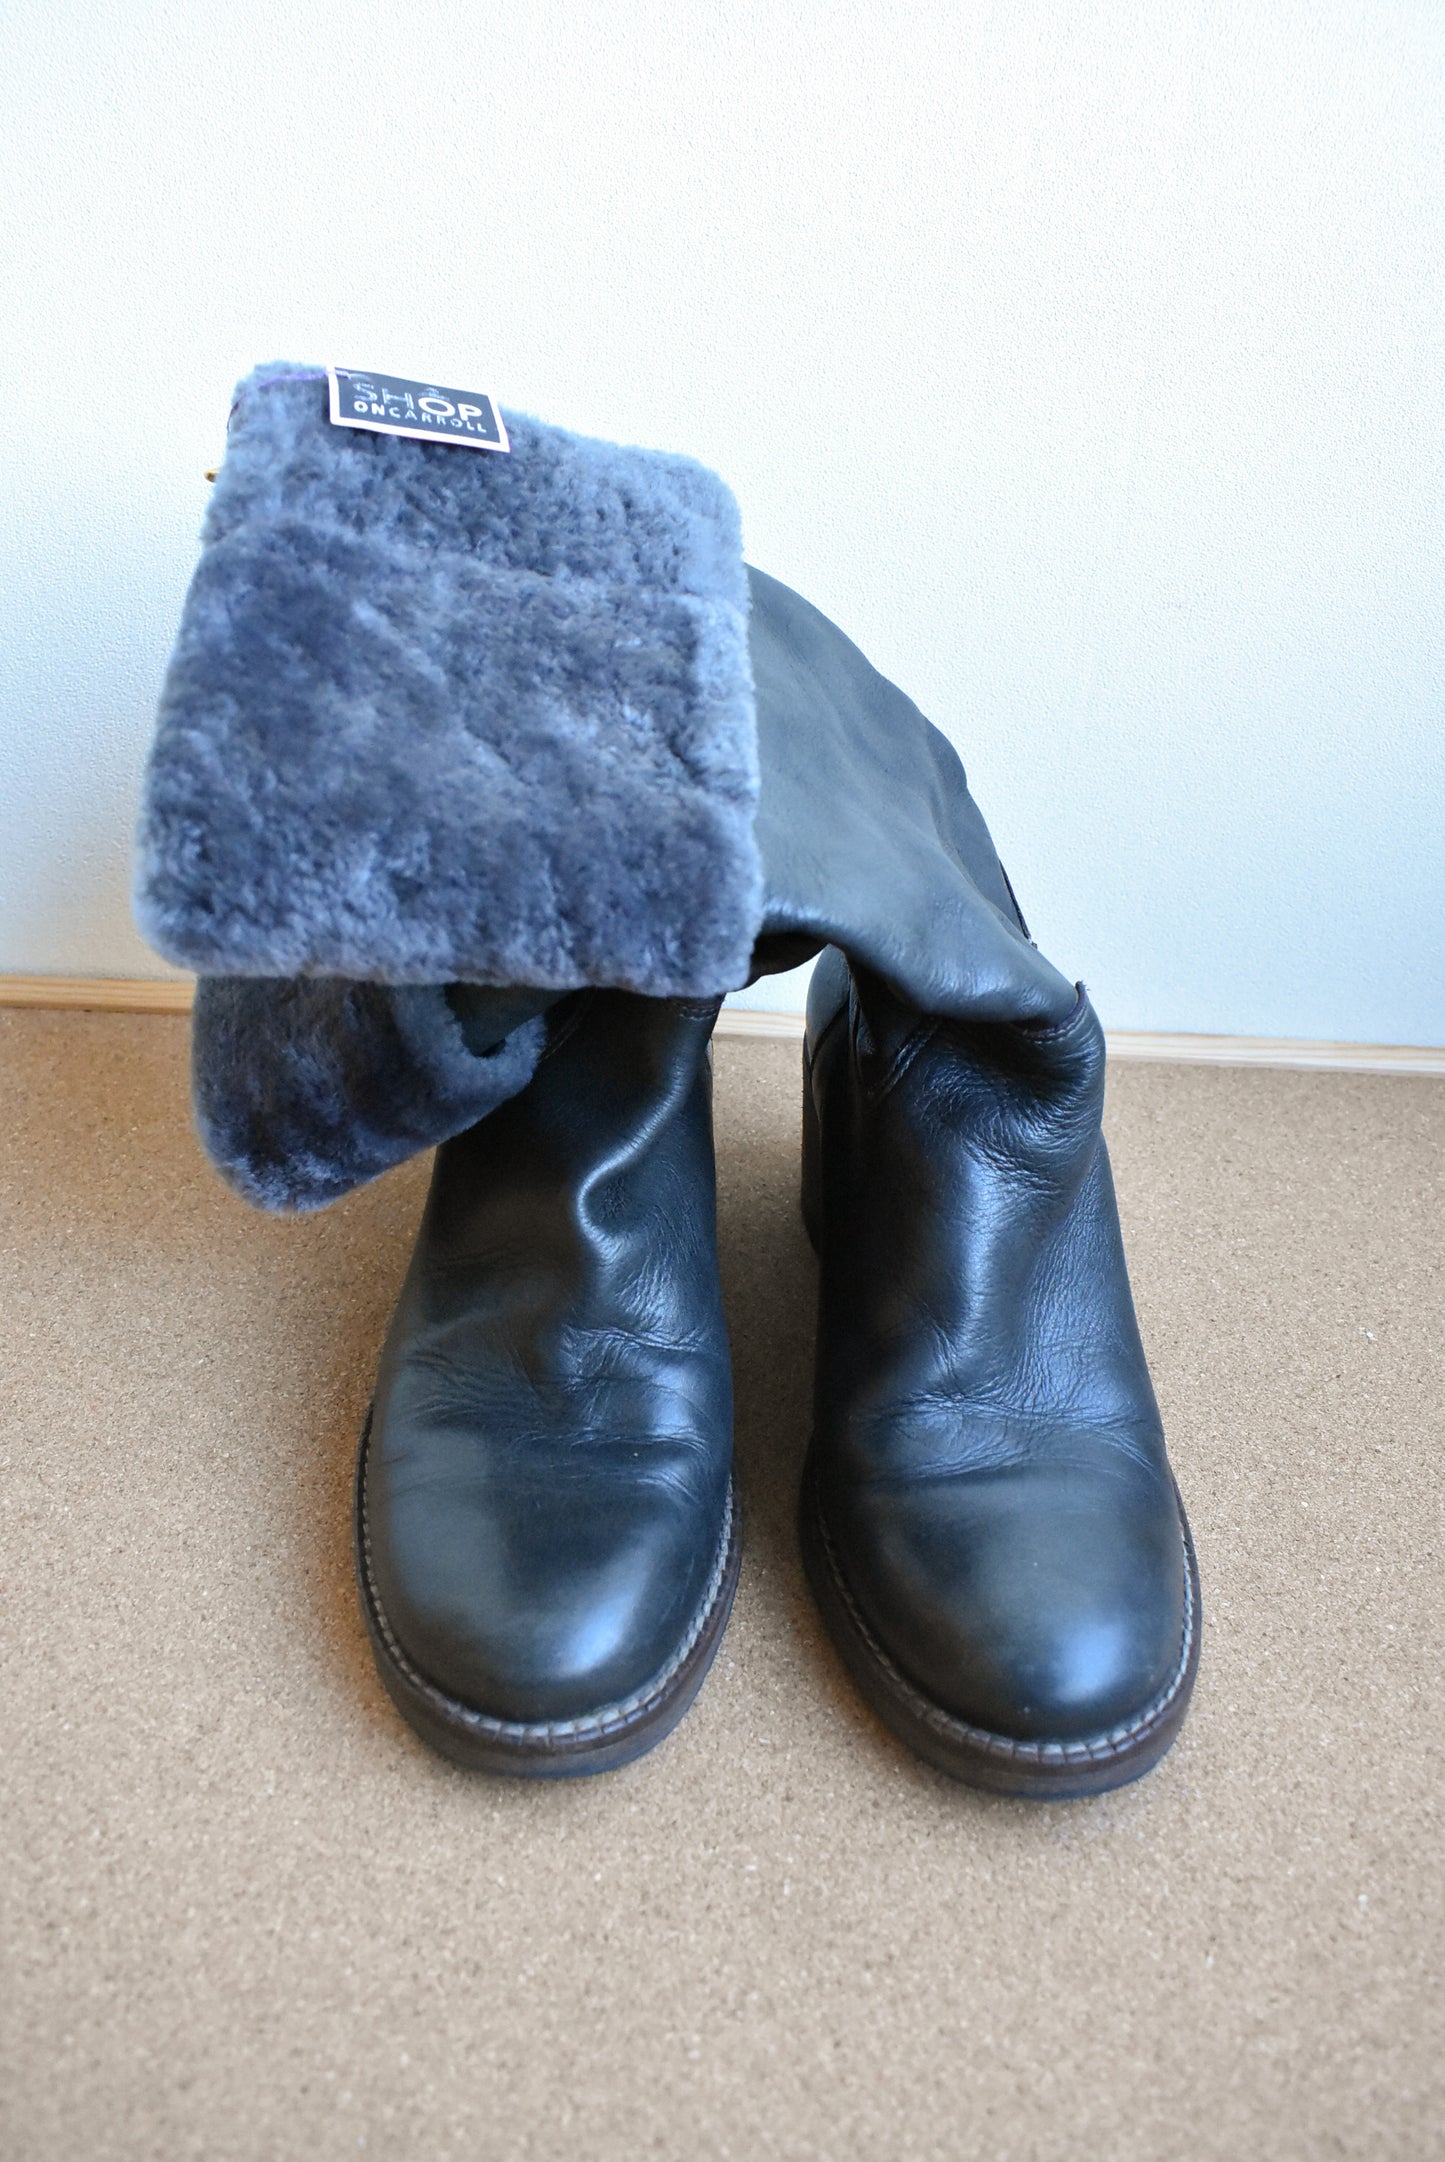 Marco Ferretti black fur-trimmed tall boots, size 37